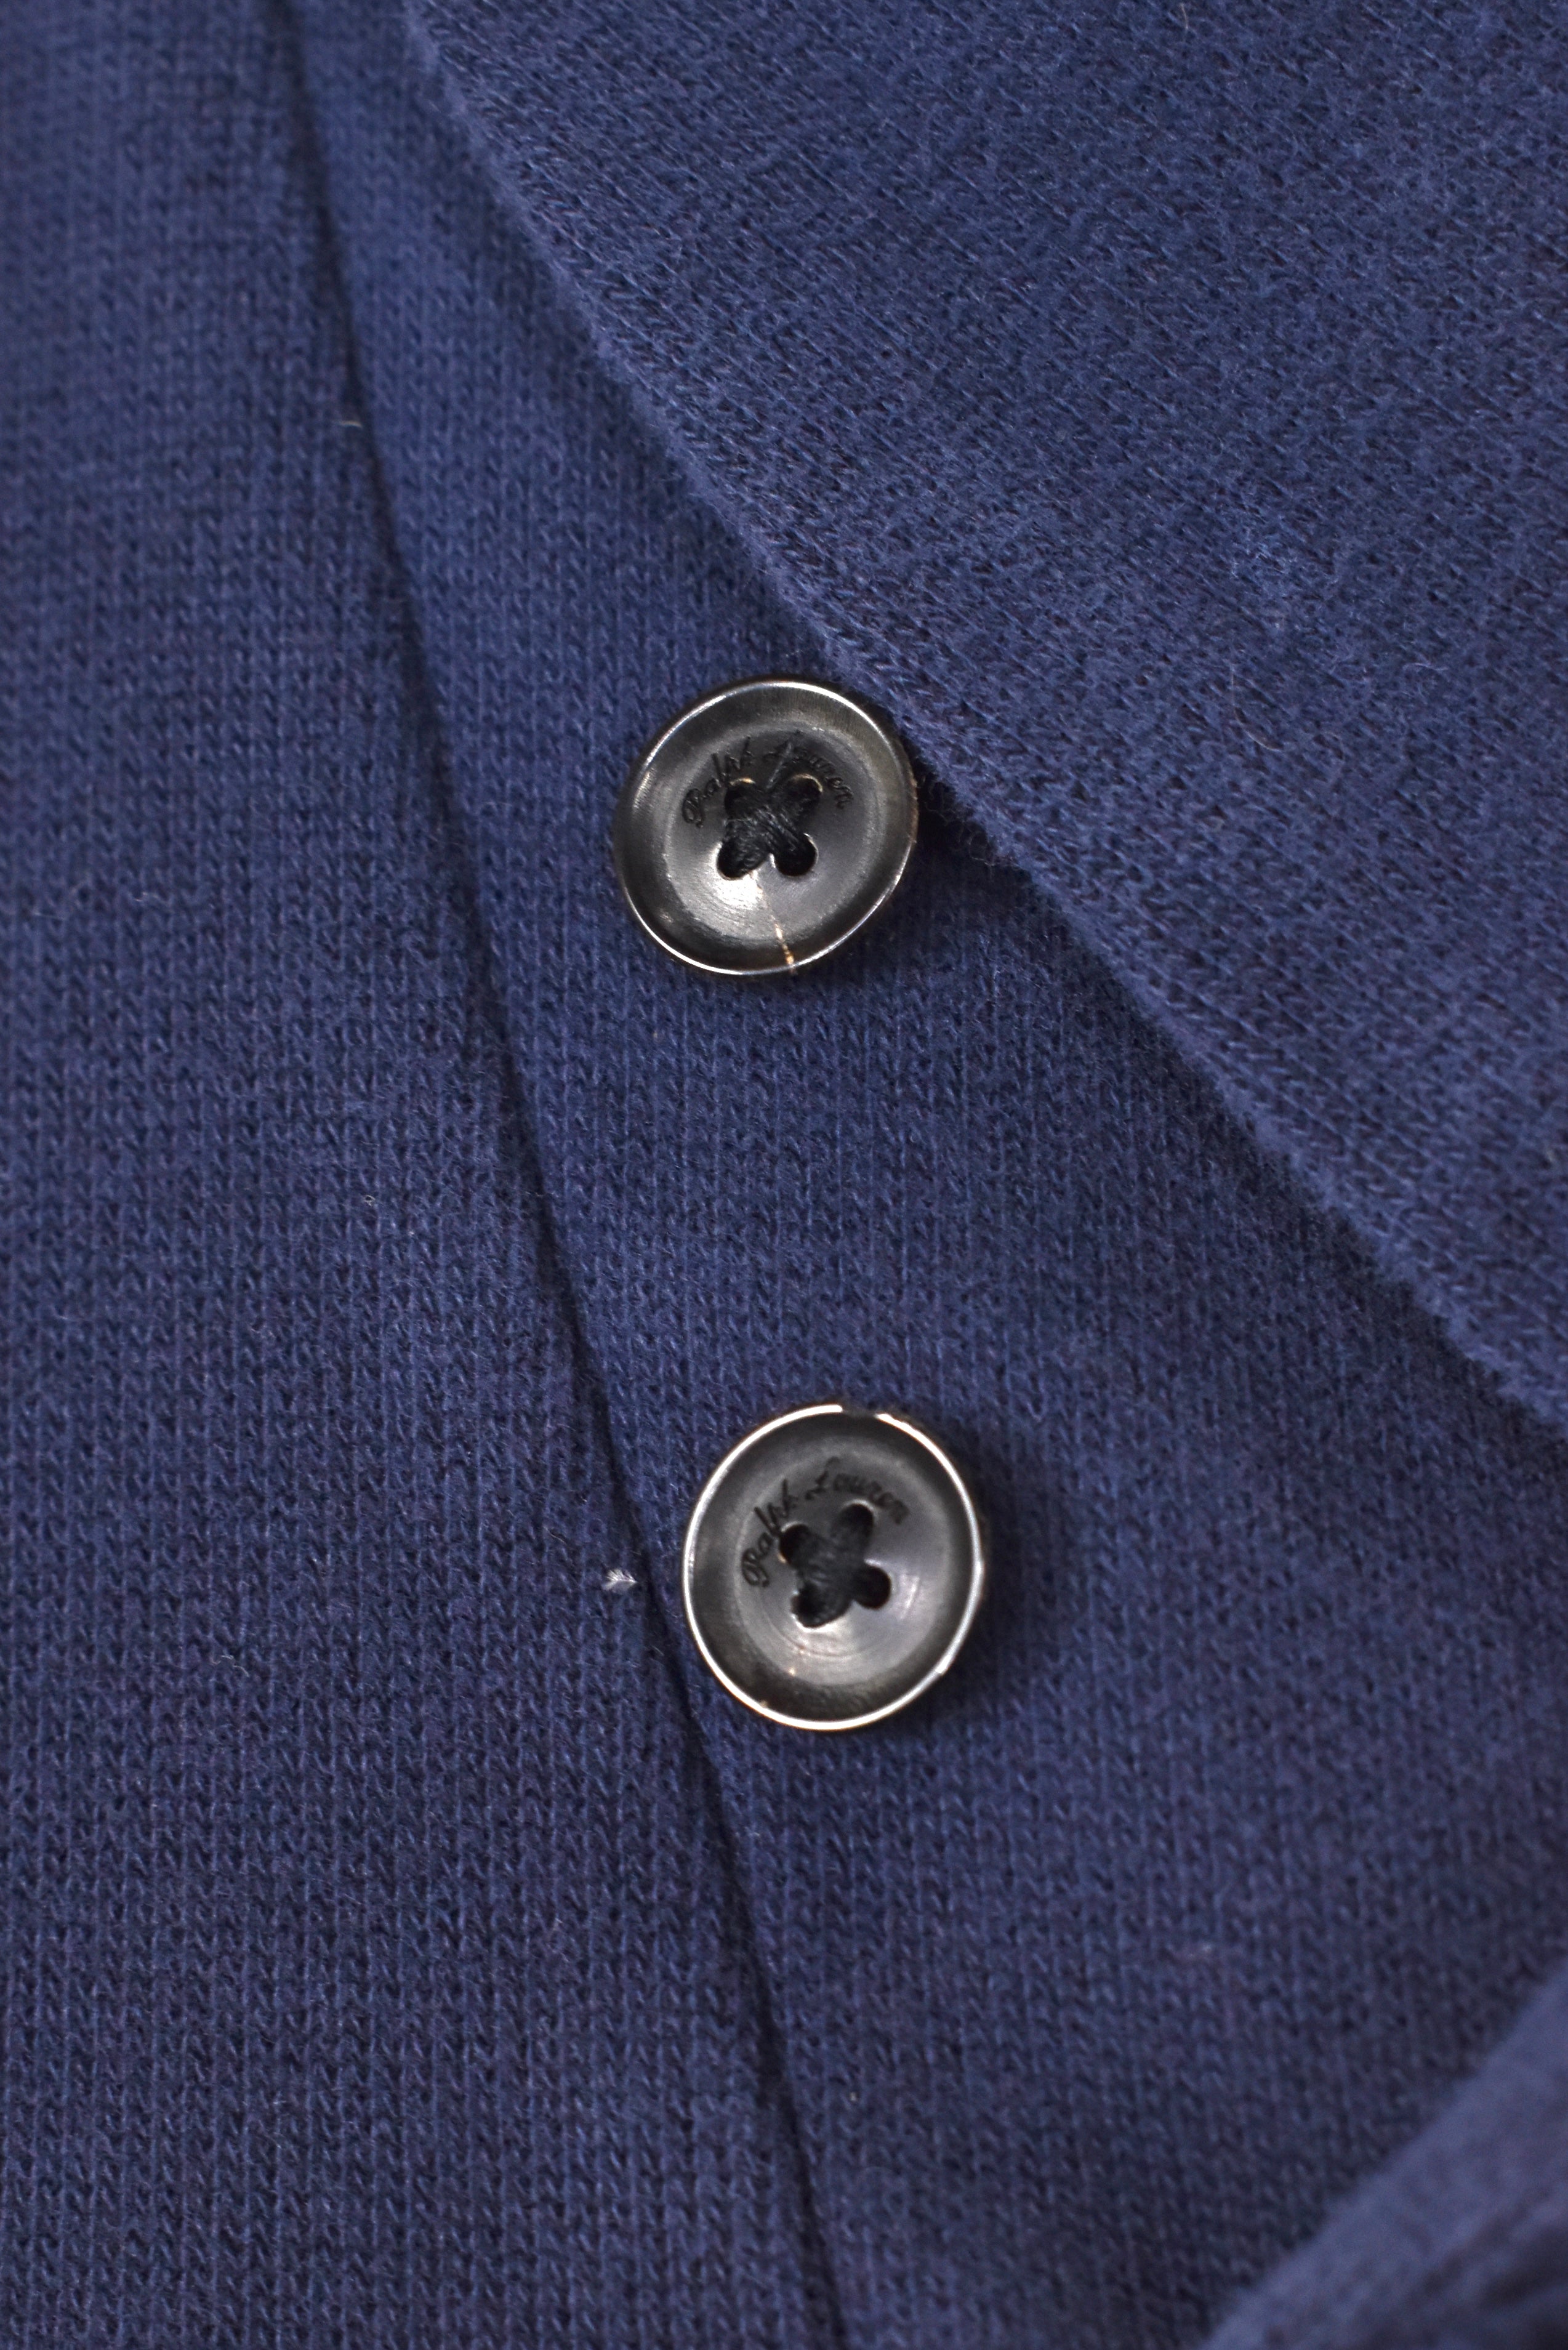 Vintage Ralph Lauren sweatshirt, navy blue embroidered jumper - AU XXXL RALPH LAUREN